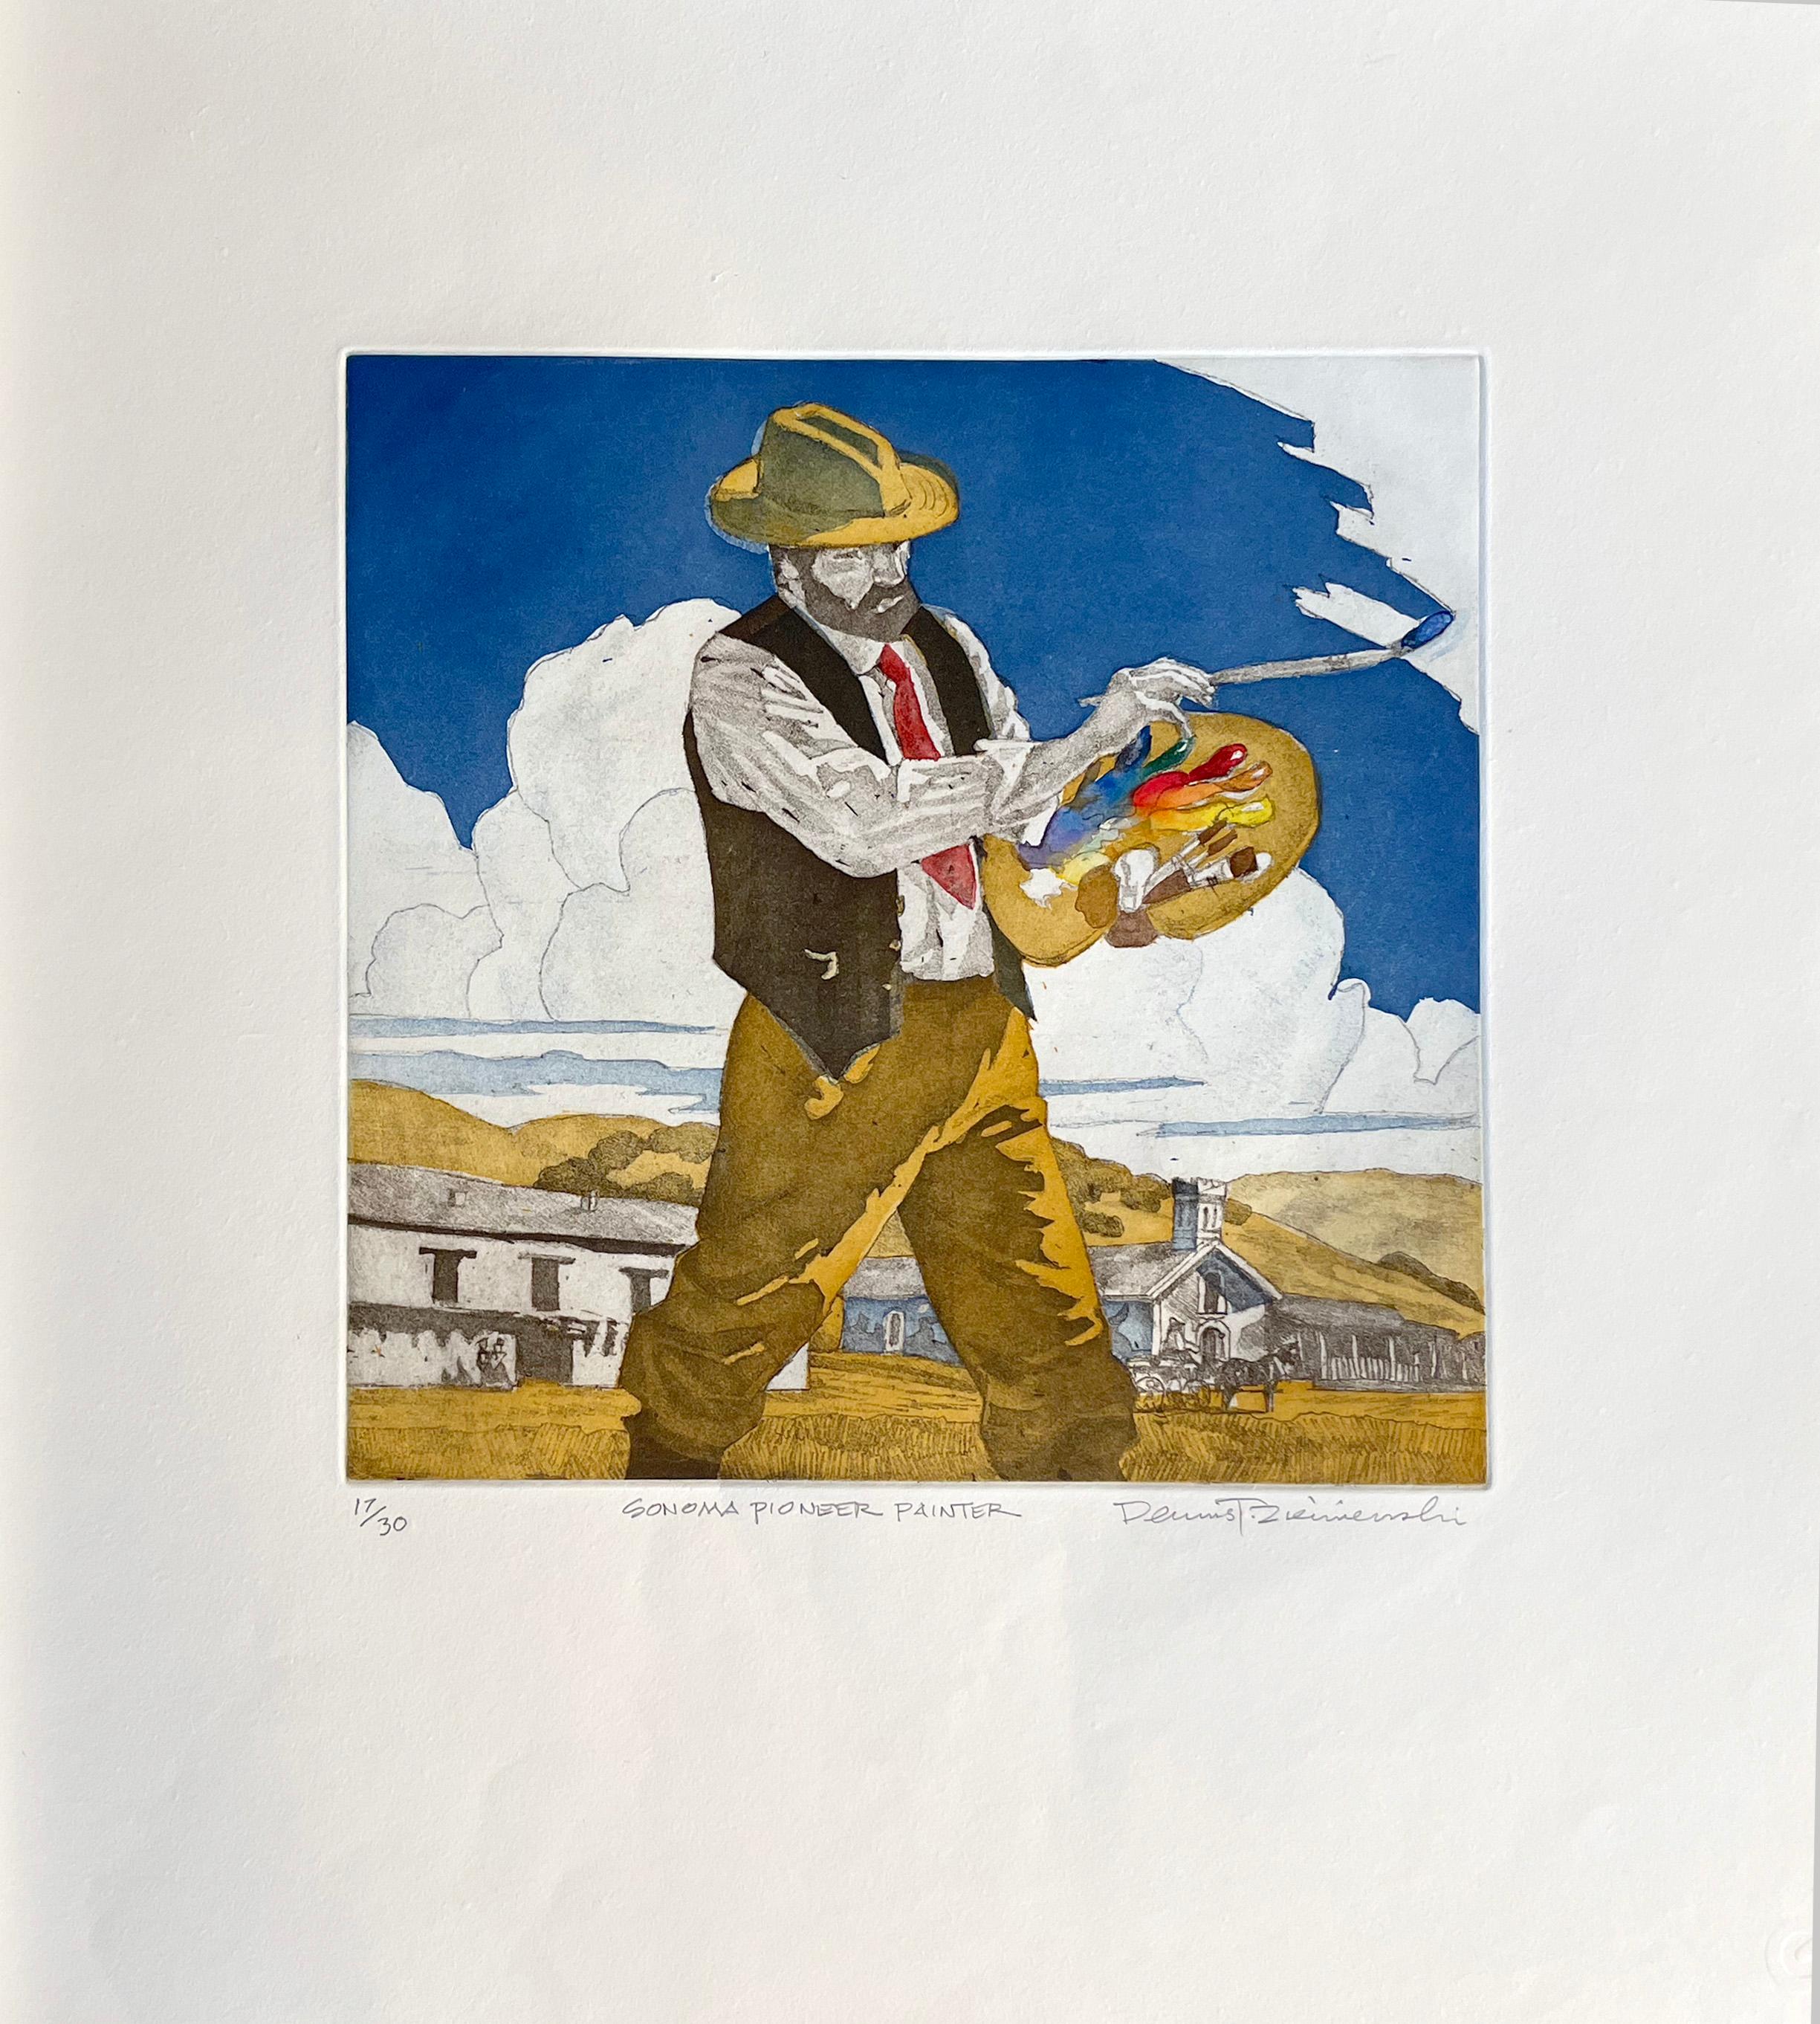 Sonoma Pioneer Painter - Print by Dennis Ziemienski